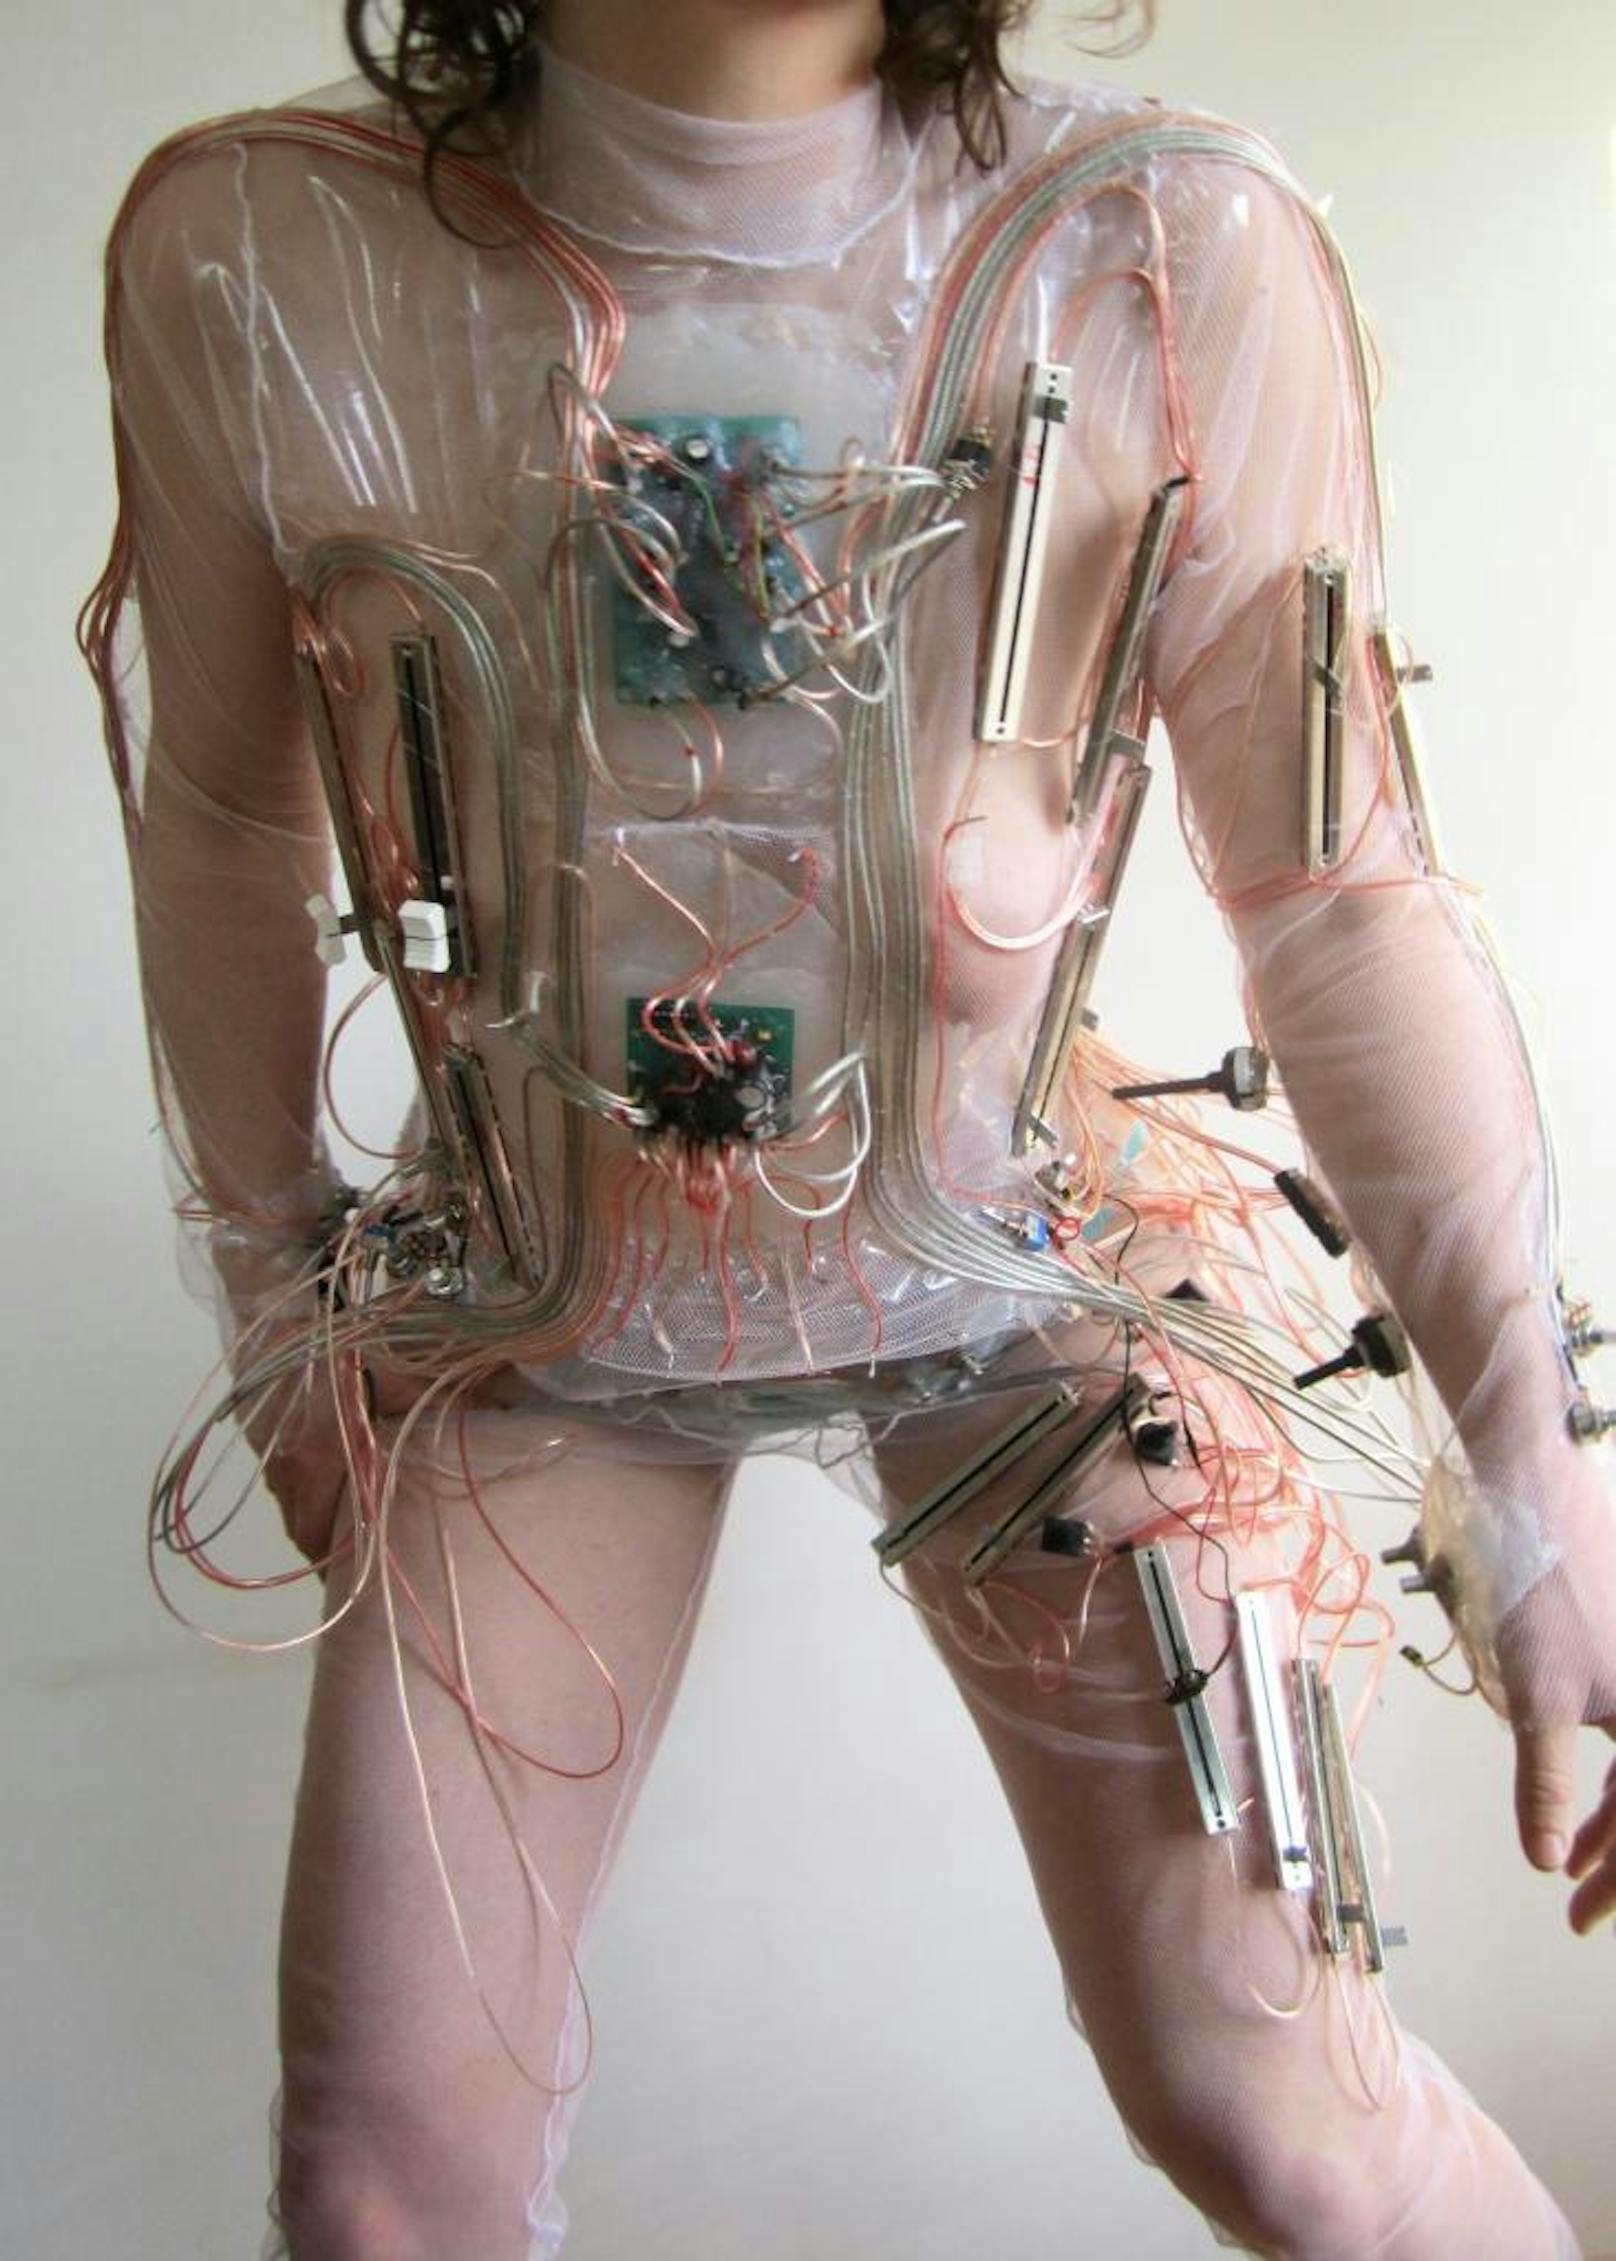 Die Künstlerin Lena Wicke-Aengenheyster alias Monsterfrau lässt ihren Körper zum elektronischen Musikinstrument werden.